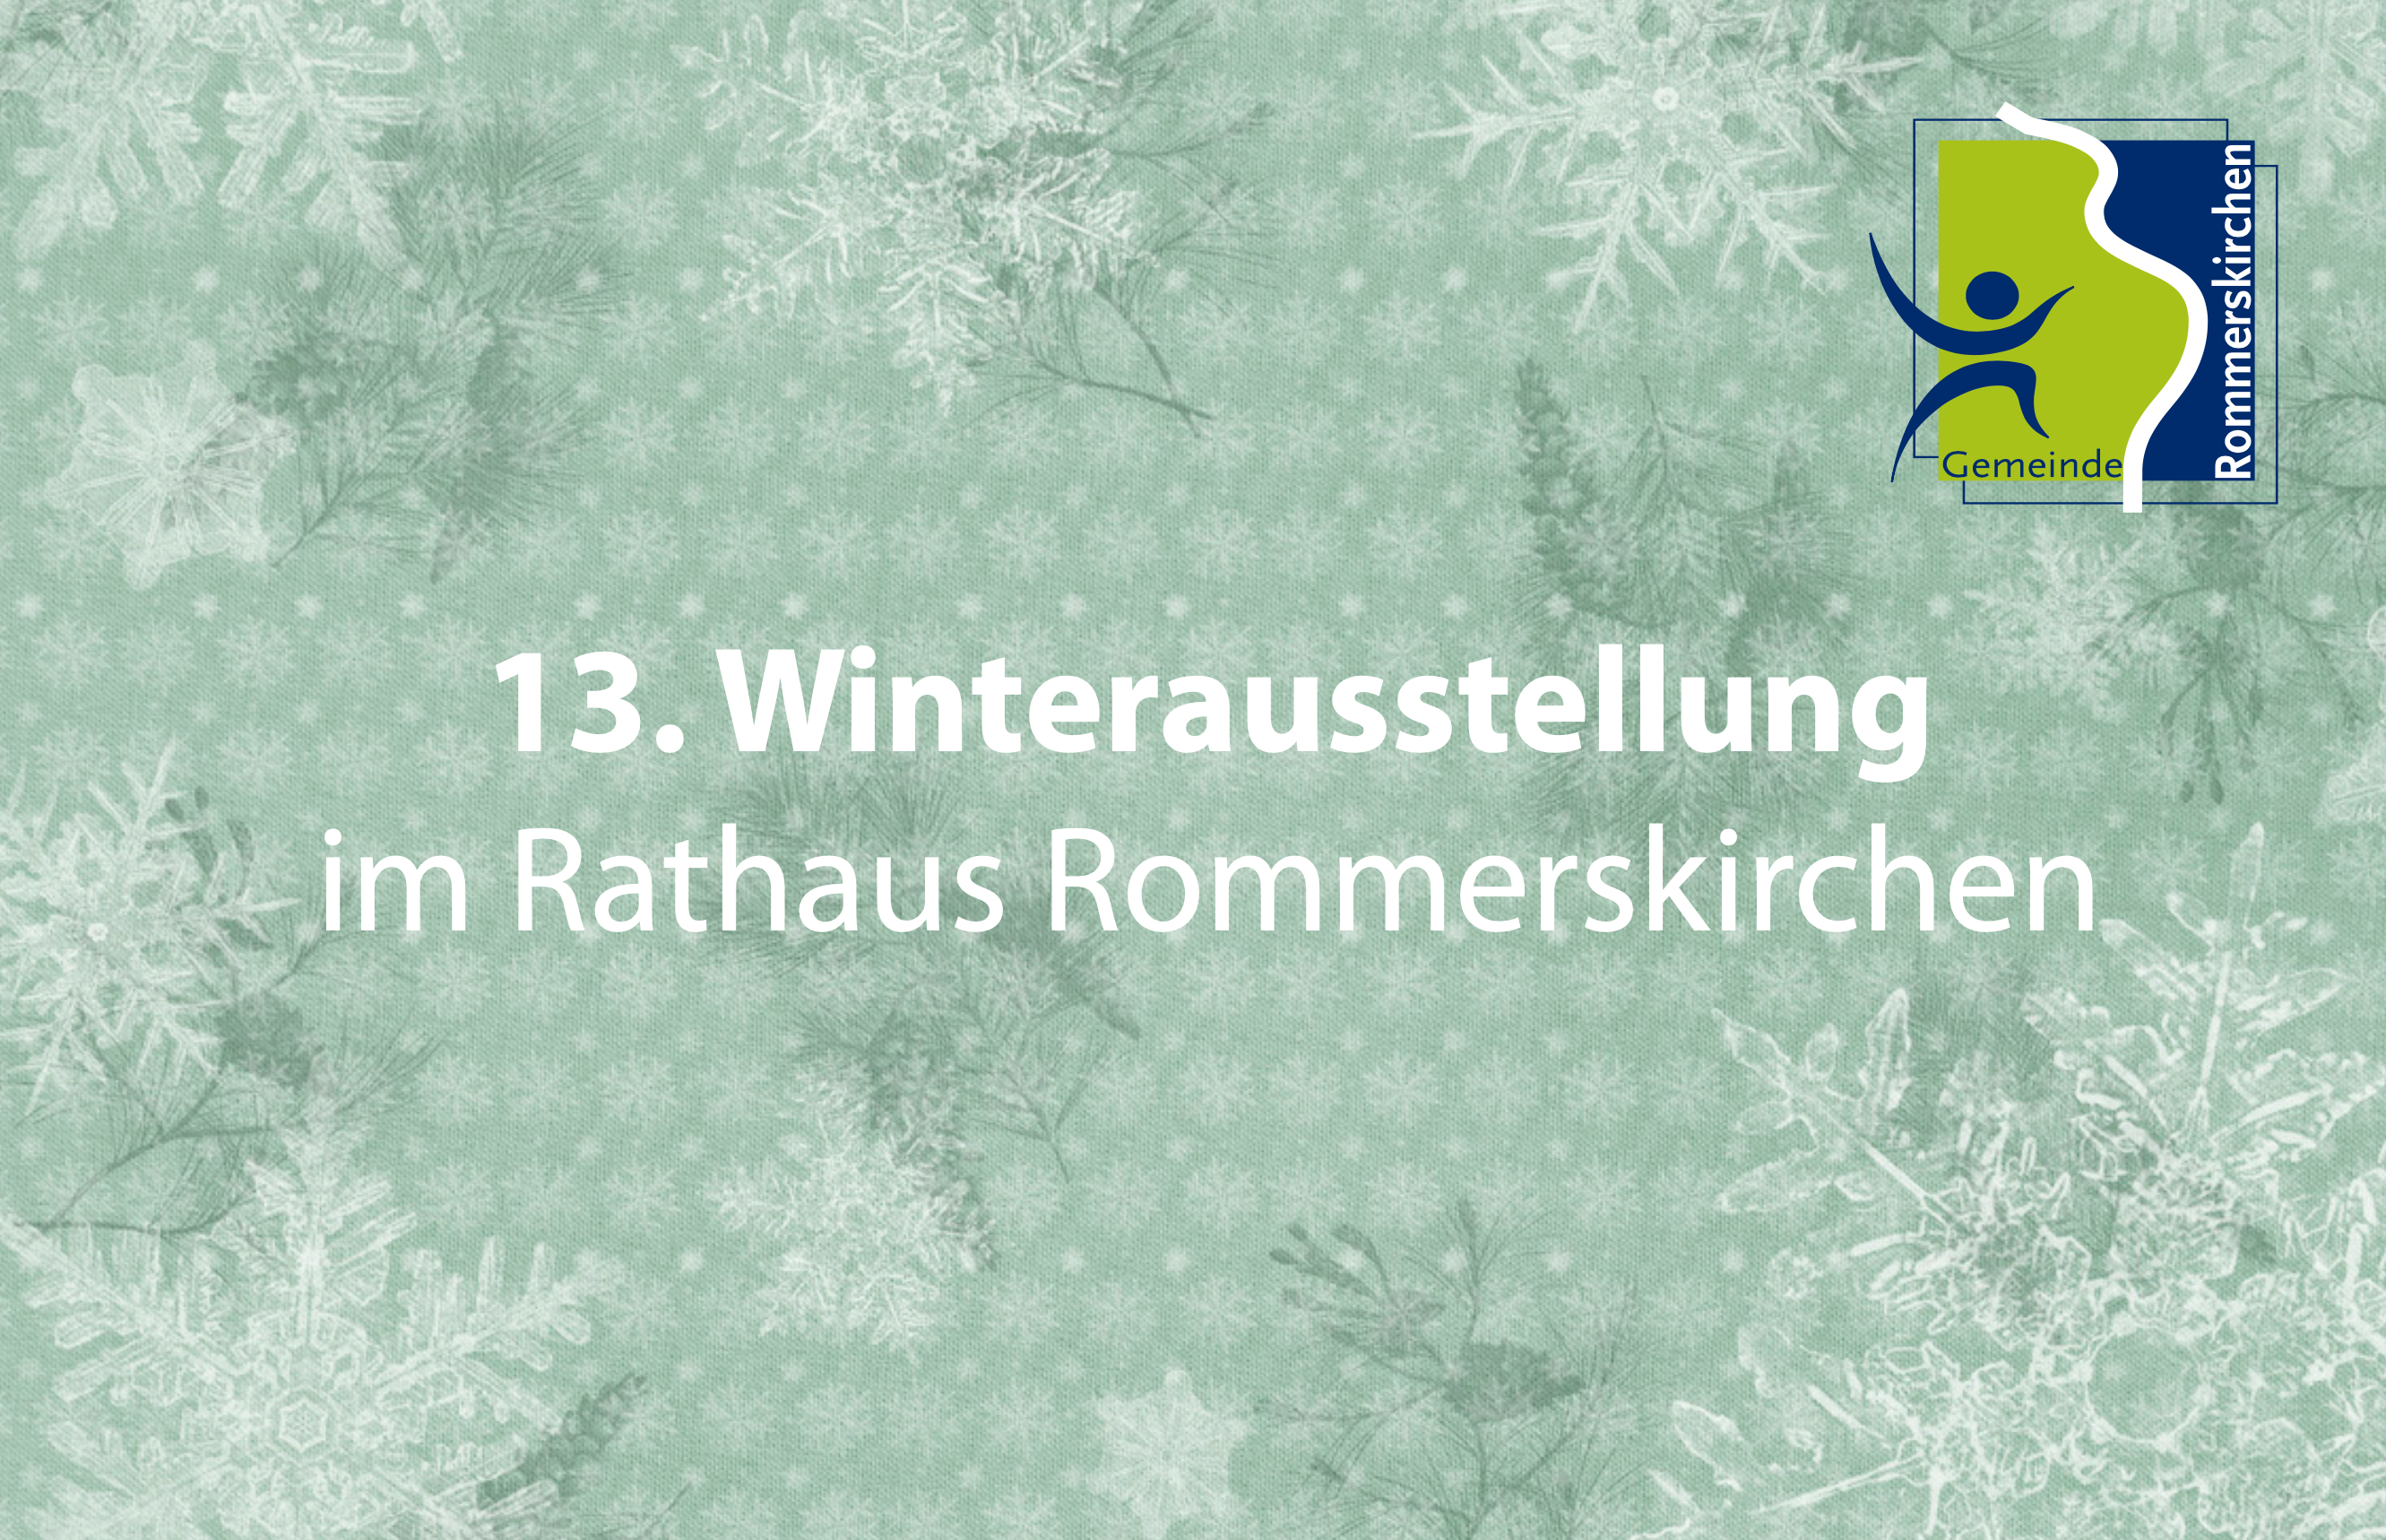 Viele Kunstwerke schmücken das Rommerskirchener Rathaus: Die 13. Winterausstellung steht an